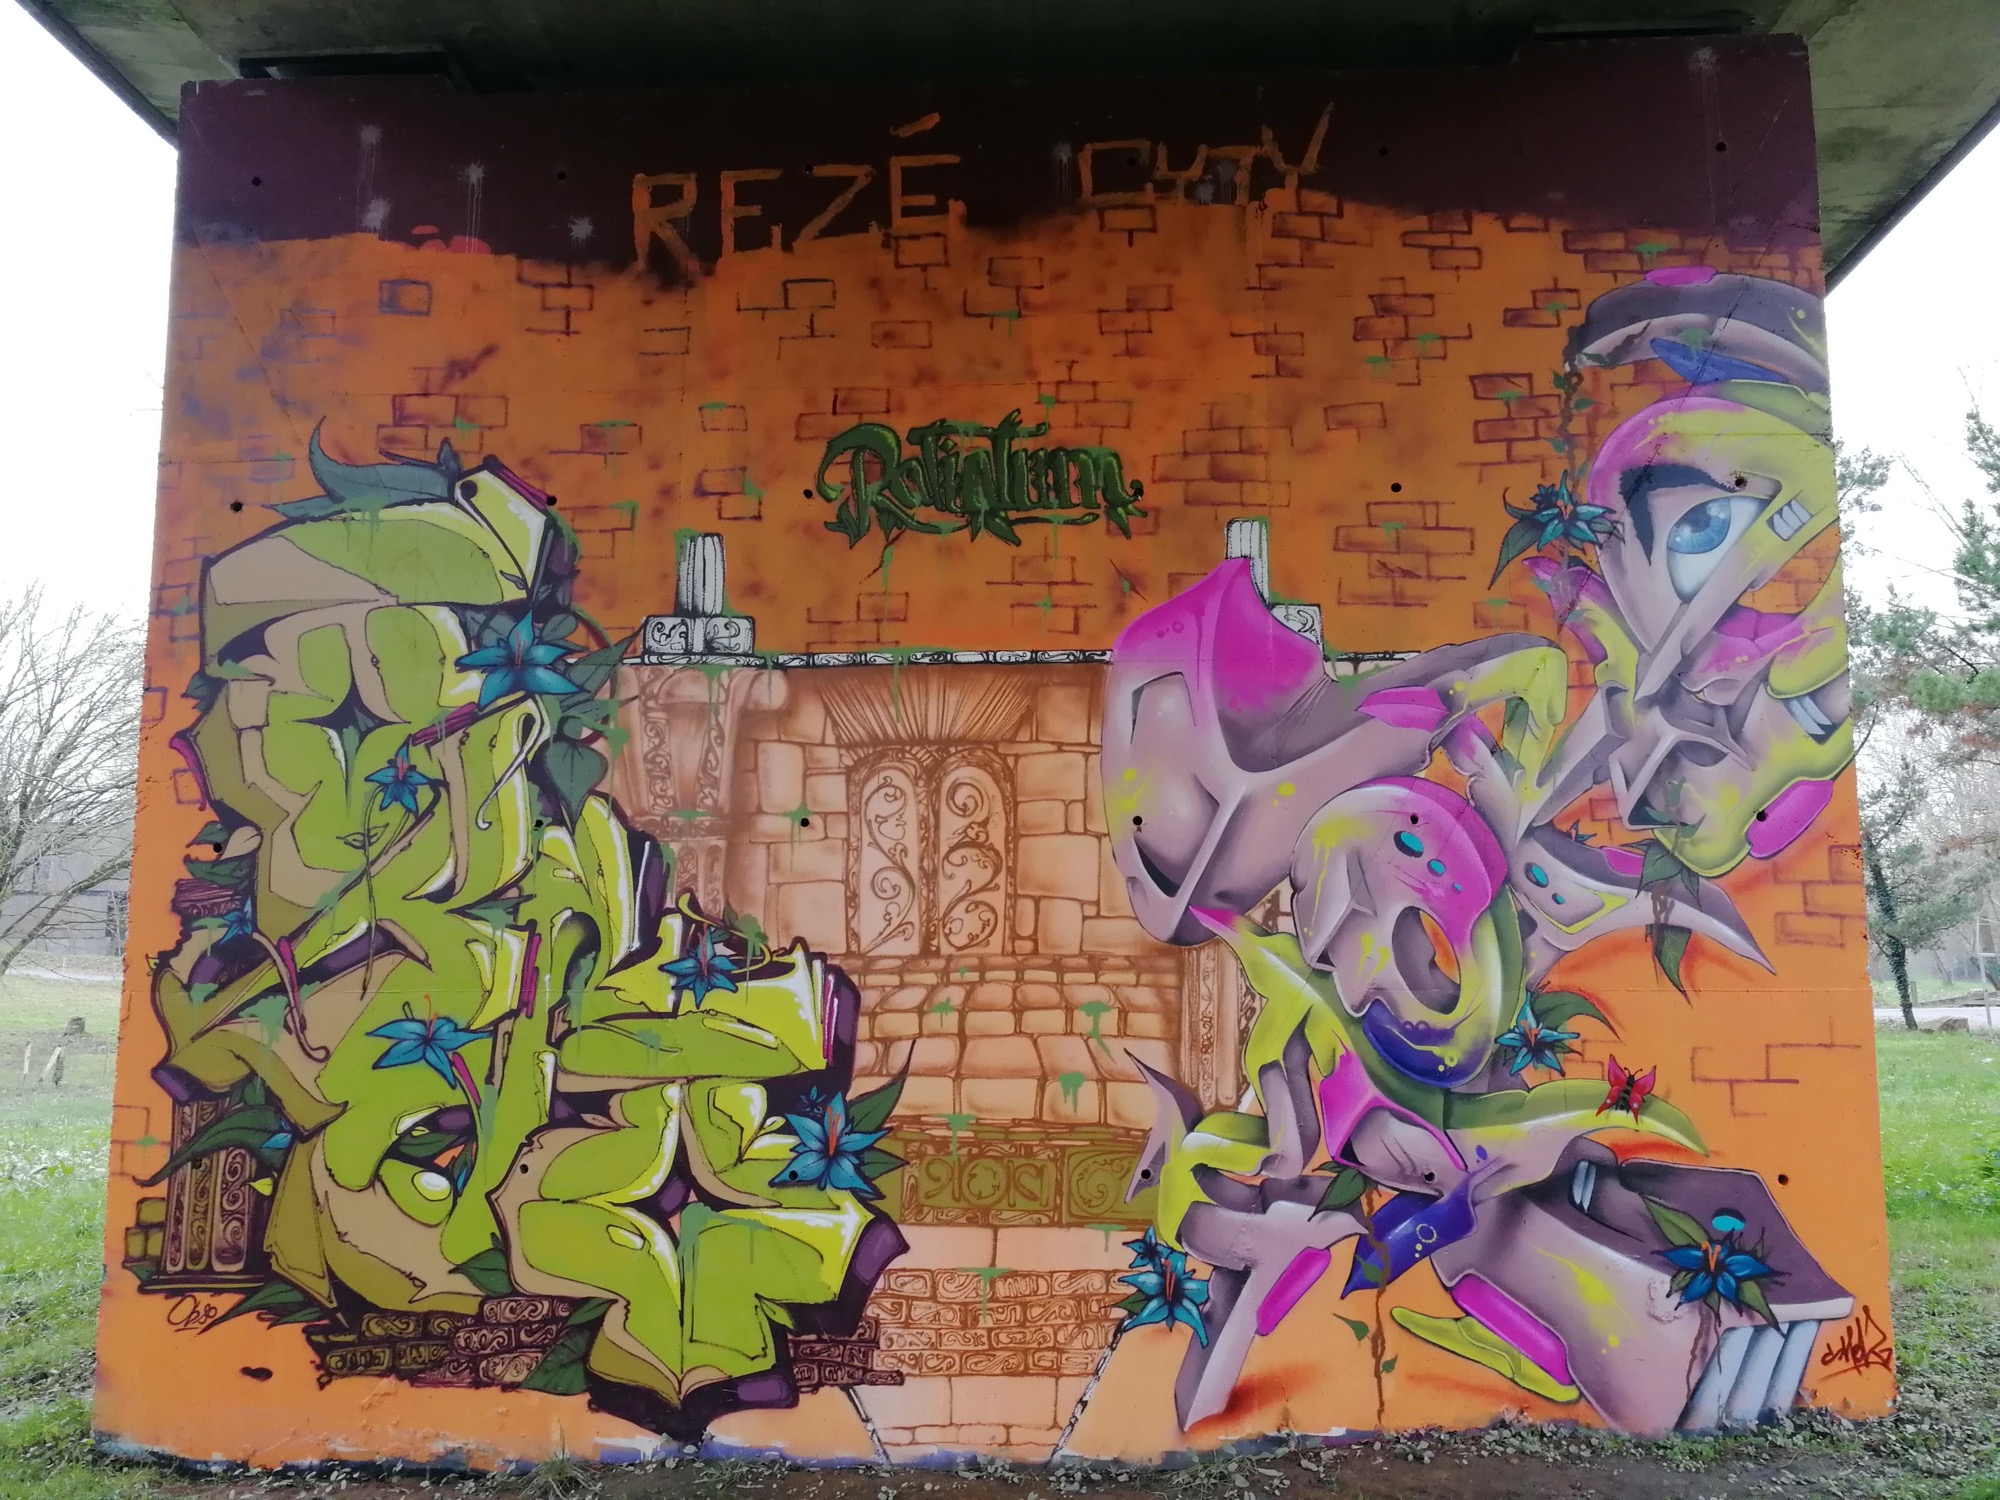 Graffiti 576  captured by Rabot in Rezé France